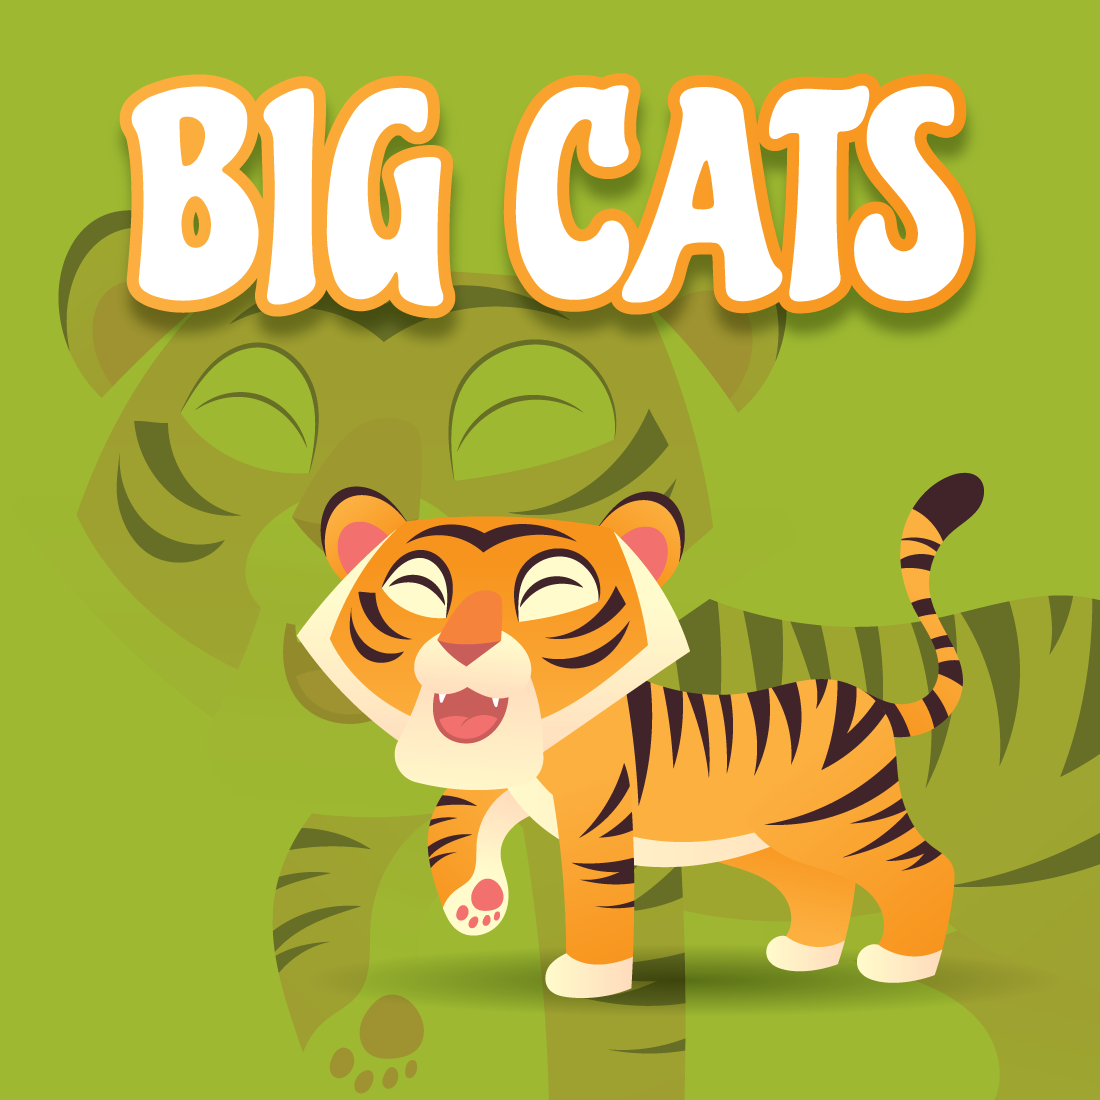 Cute Big Cats Vector Cartoon Characters